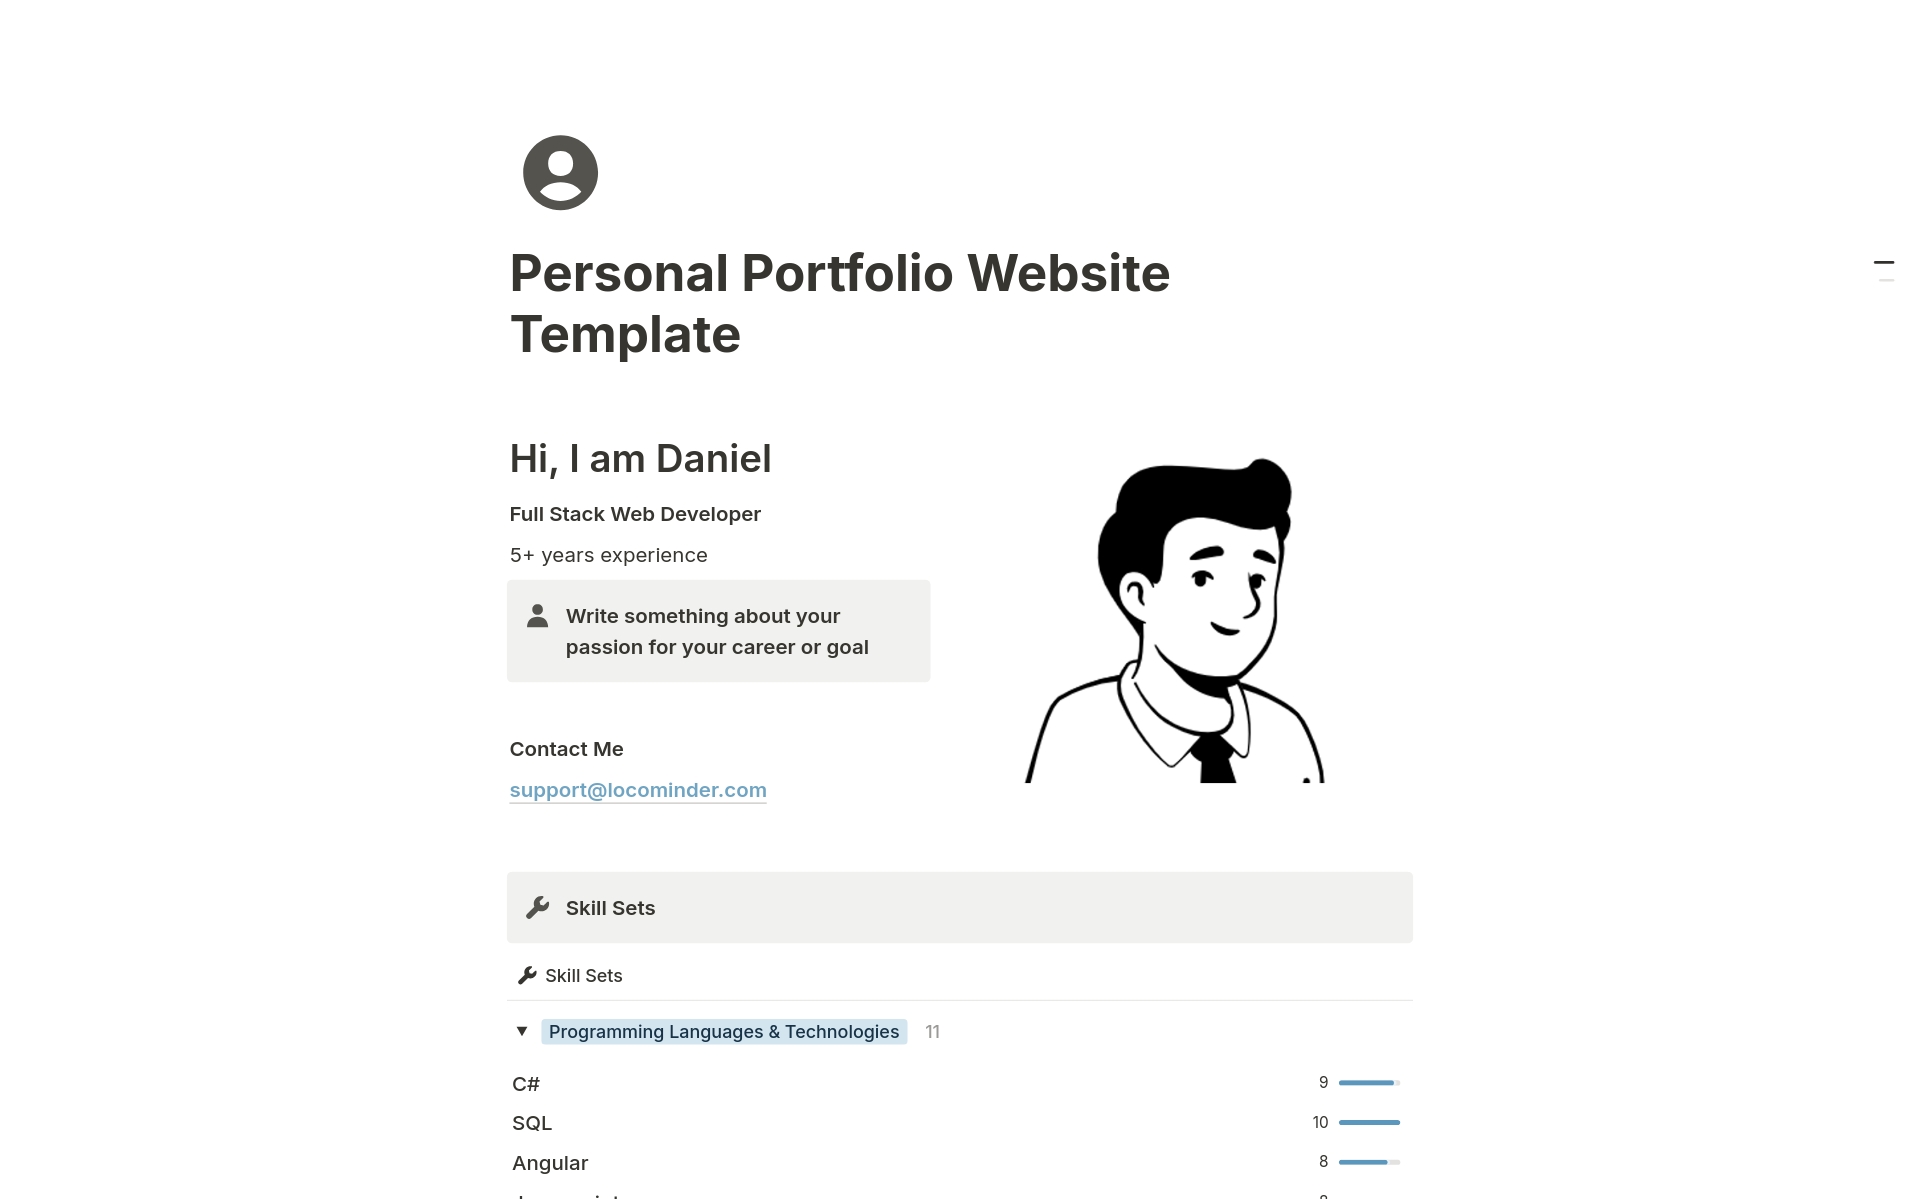 Vista previa de una plantilla para Personal Portfolio Website